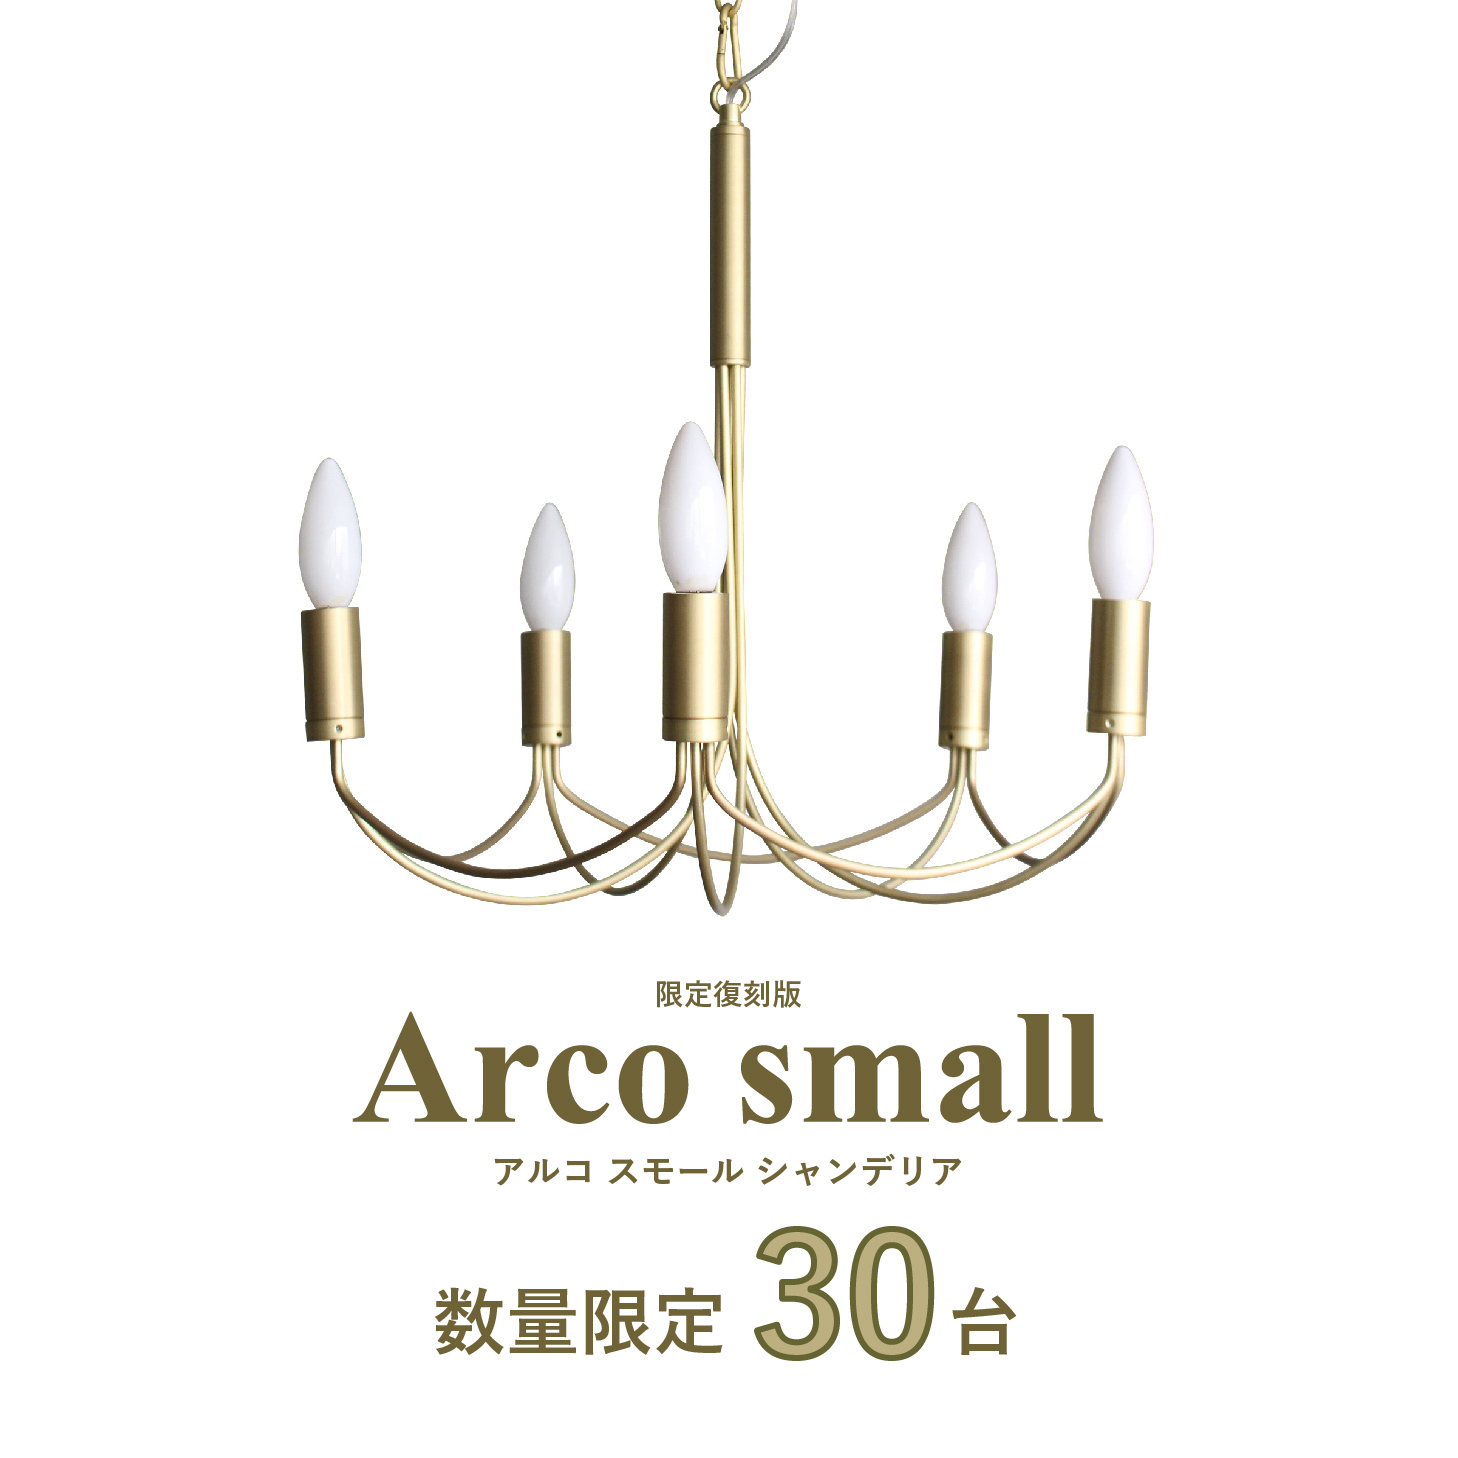 数量限定 Arco small アルコスモール シャンデリア アンティークゴールド-DI CLASSE ONLINE SHOP